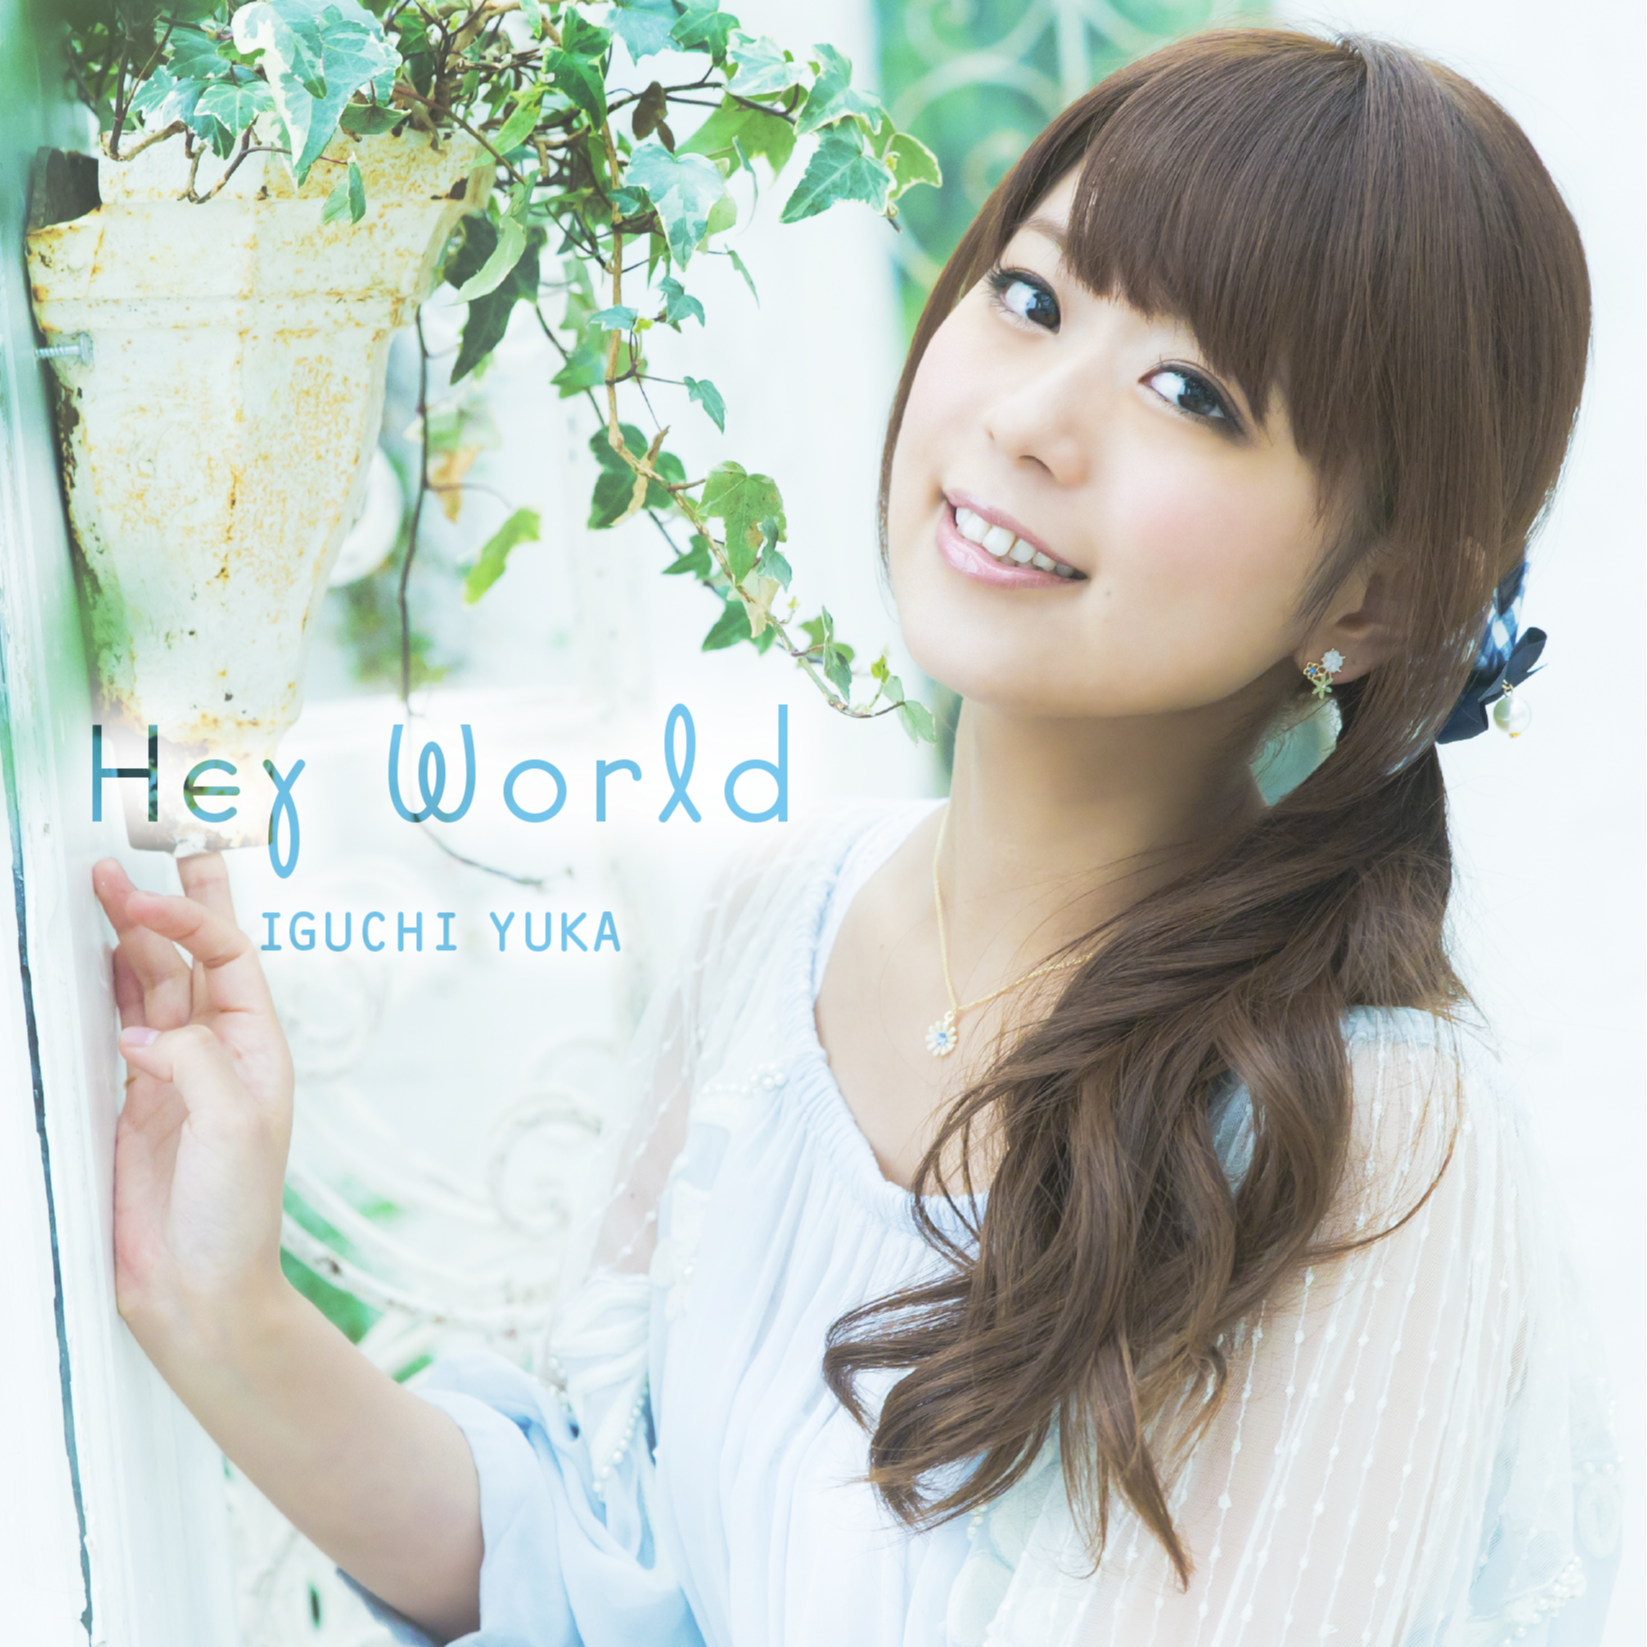 井口裕香 - Hey World (instrumental)